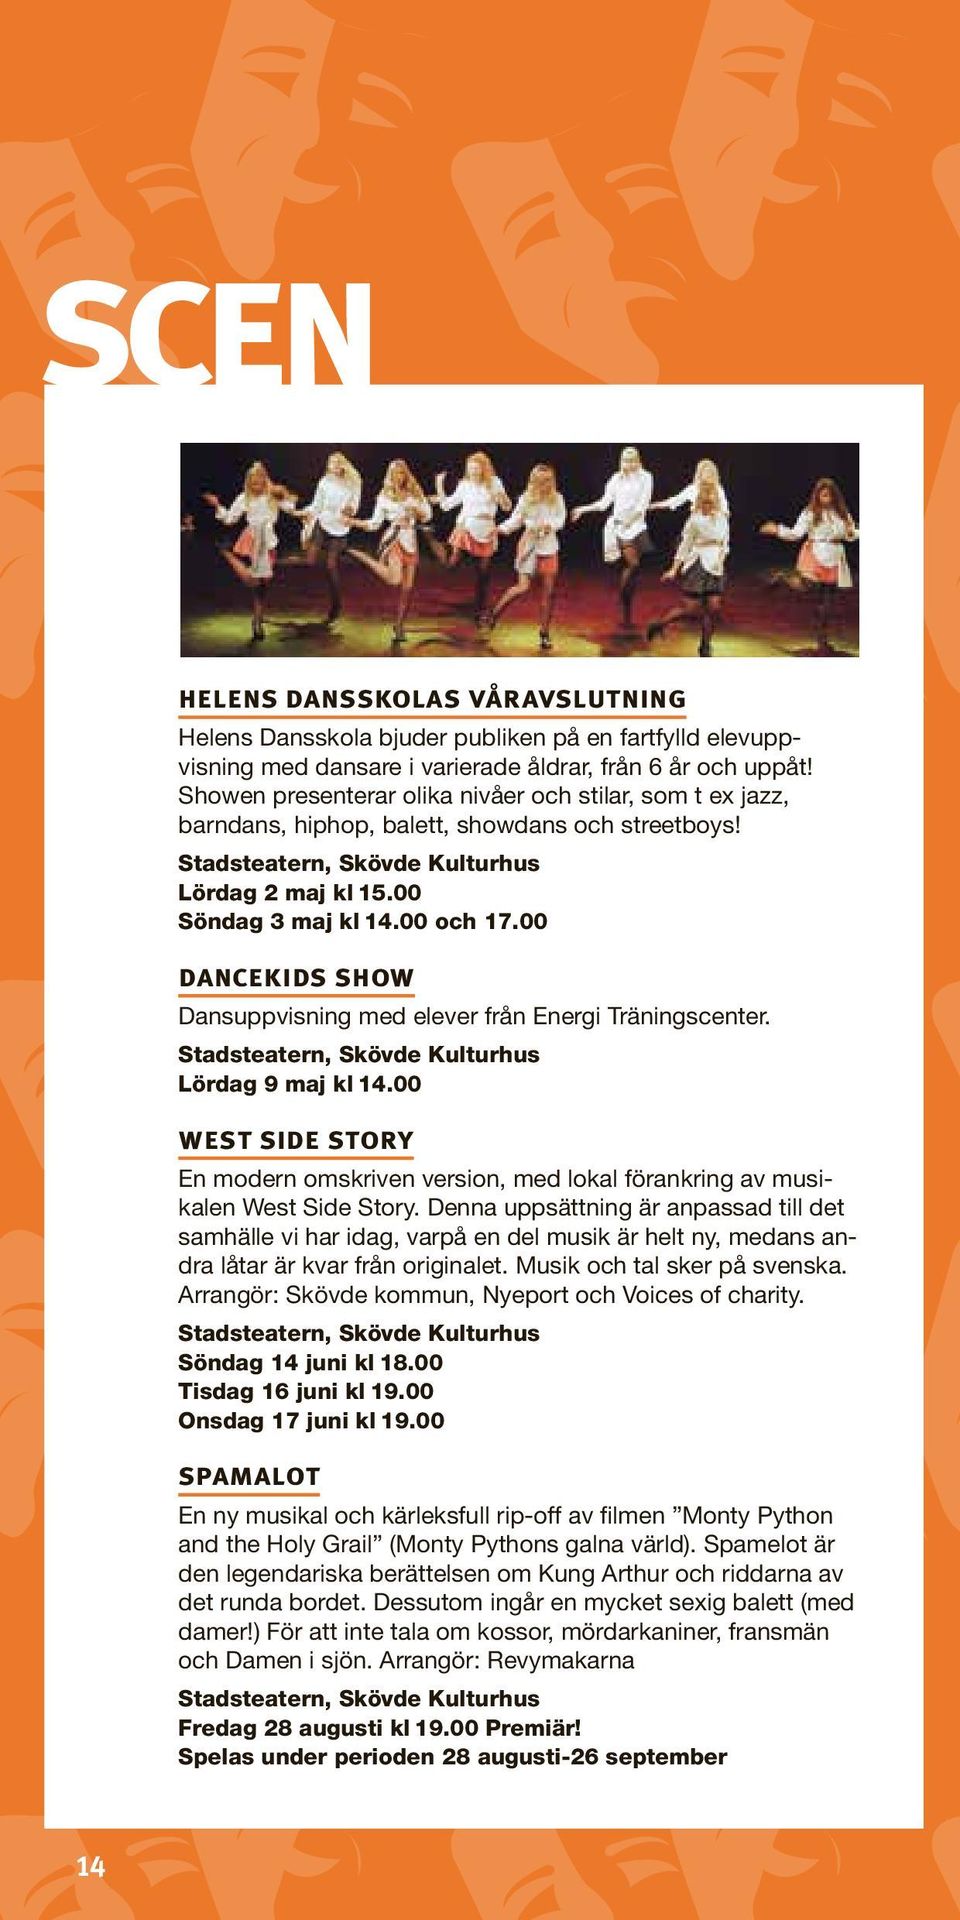 00 dancekids show Dansuppvisning med elever från Energi Träningscenter. Stadsteatern, Skövde Kulturhus Lördag 9 maj kl 14.